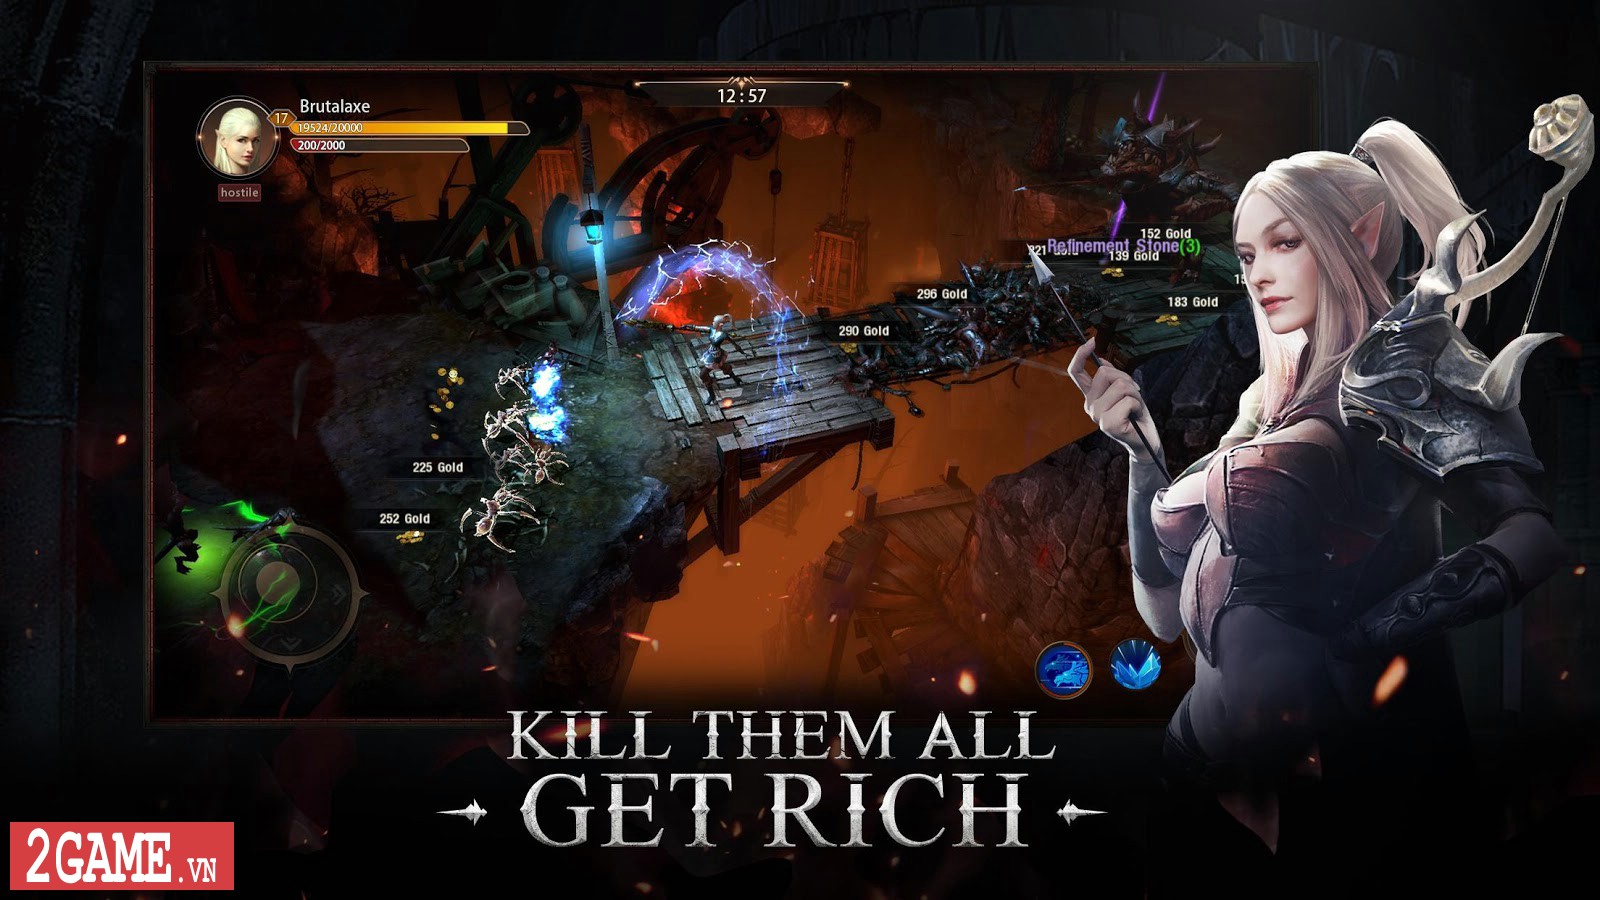 Blade Reborn – Game nhập vai hành động lấy bối cảnh Tây Âu, gameplay phong cách Diablo cực chất